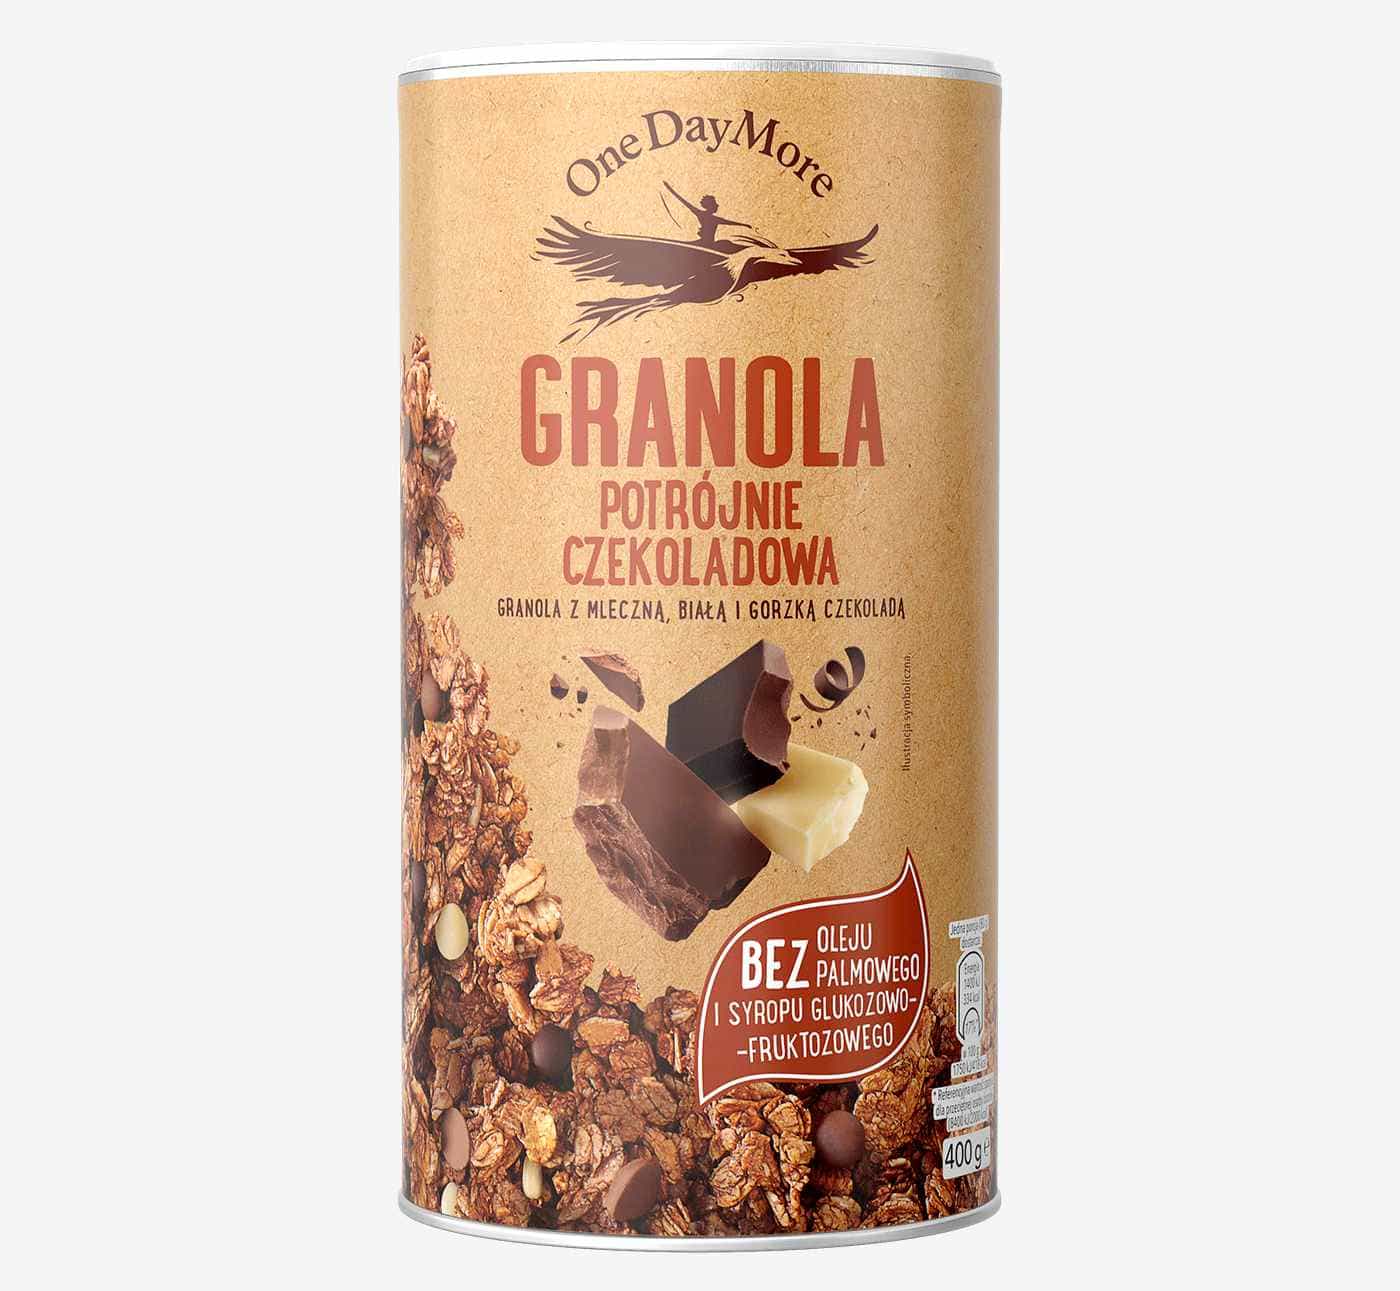 granola-potrojnie-czekoladowa-onedaymore-1400×1291-kw44-min